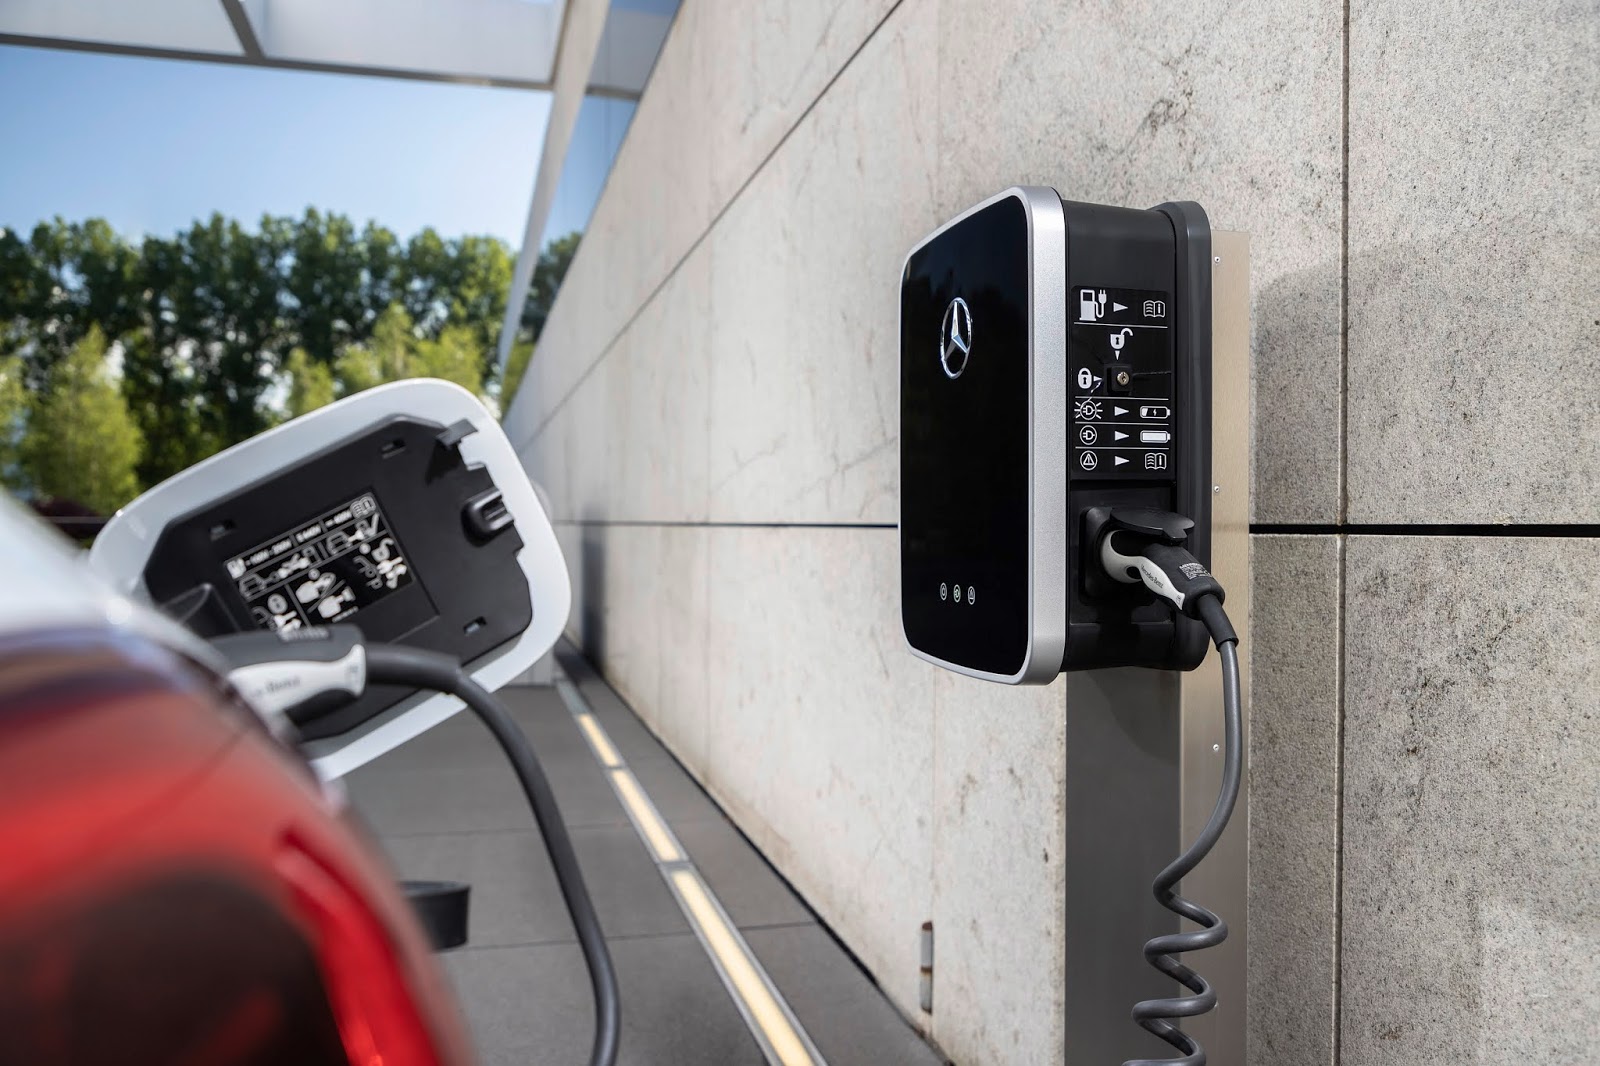 20C0351 001 1 Mercedes EQ Power : Τα Plug-in hybrid προσφέρουν τα οφέλη της ηλεκτροκίνησης, στις καθημερινές μετακινήσεις